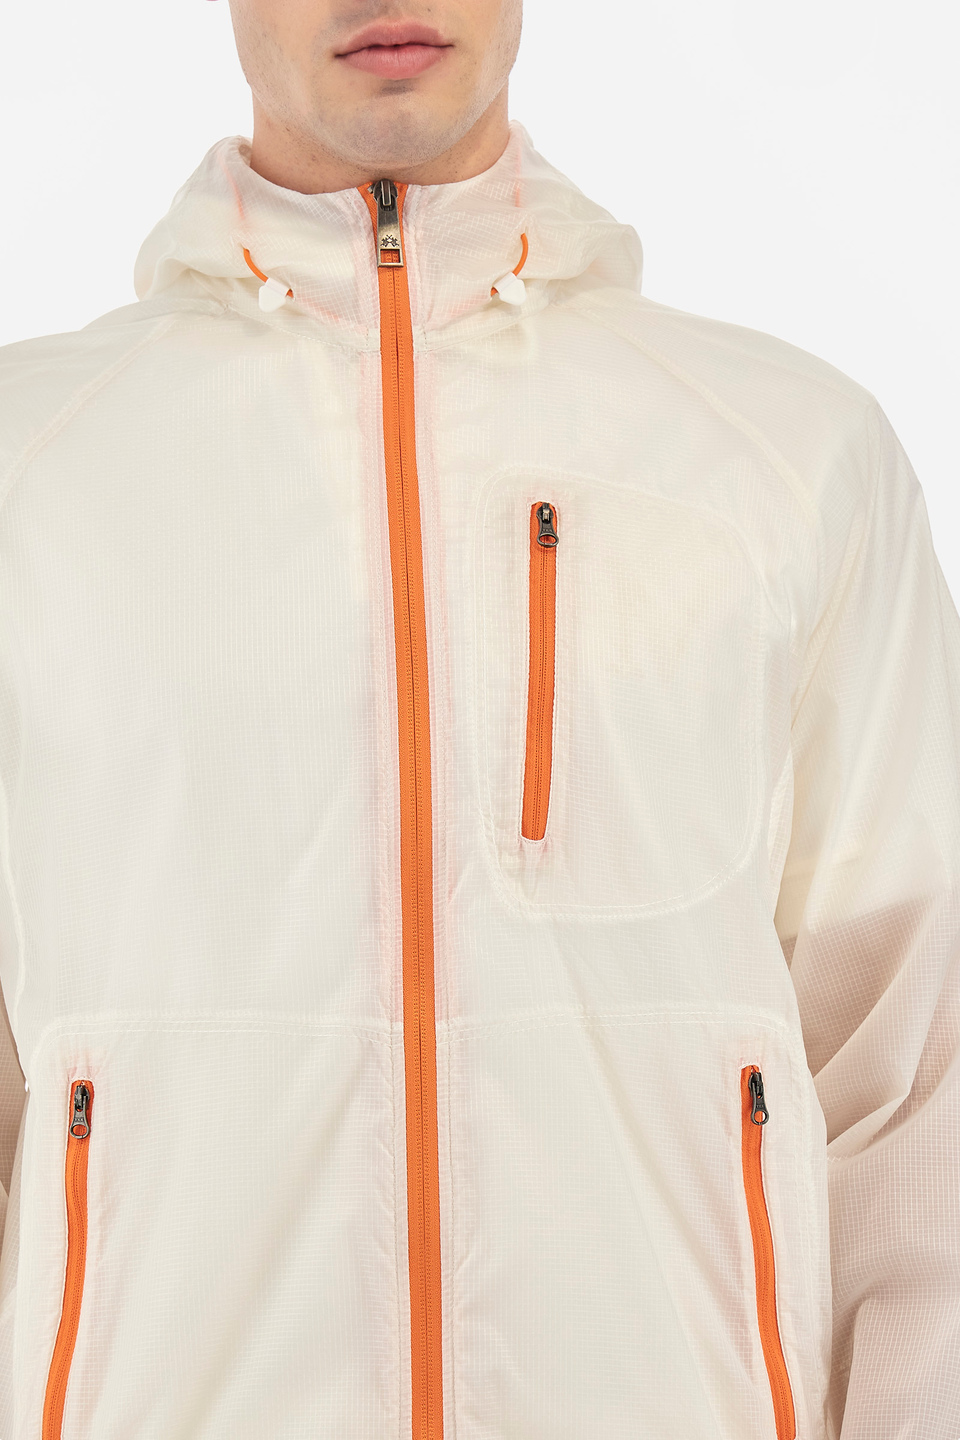 Regular fit solid color bomber jacket for men - Velichko | La Martina - Official Online Shop